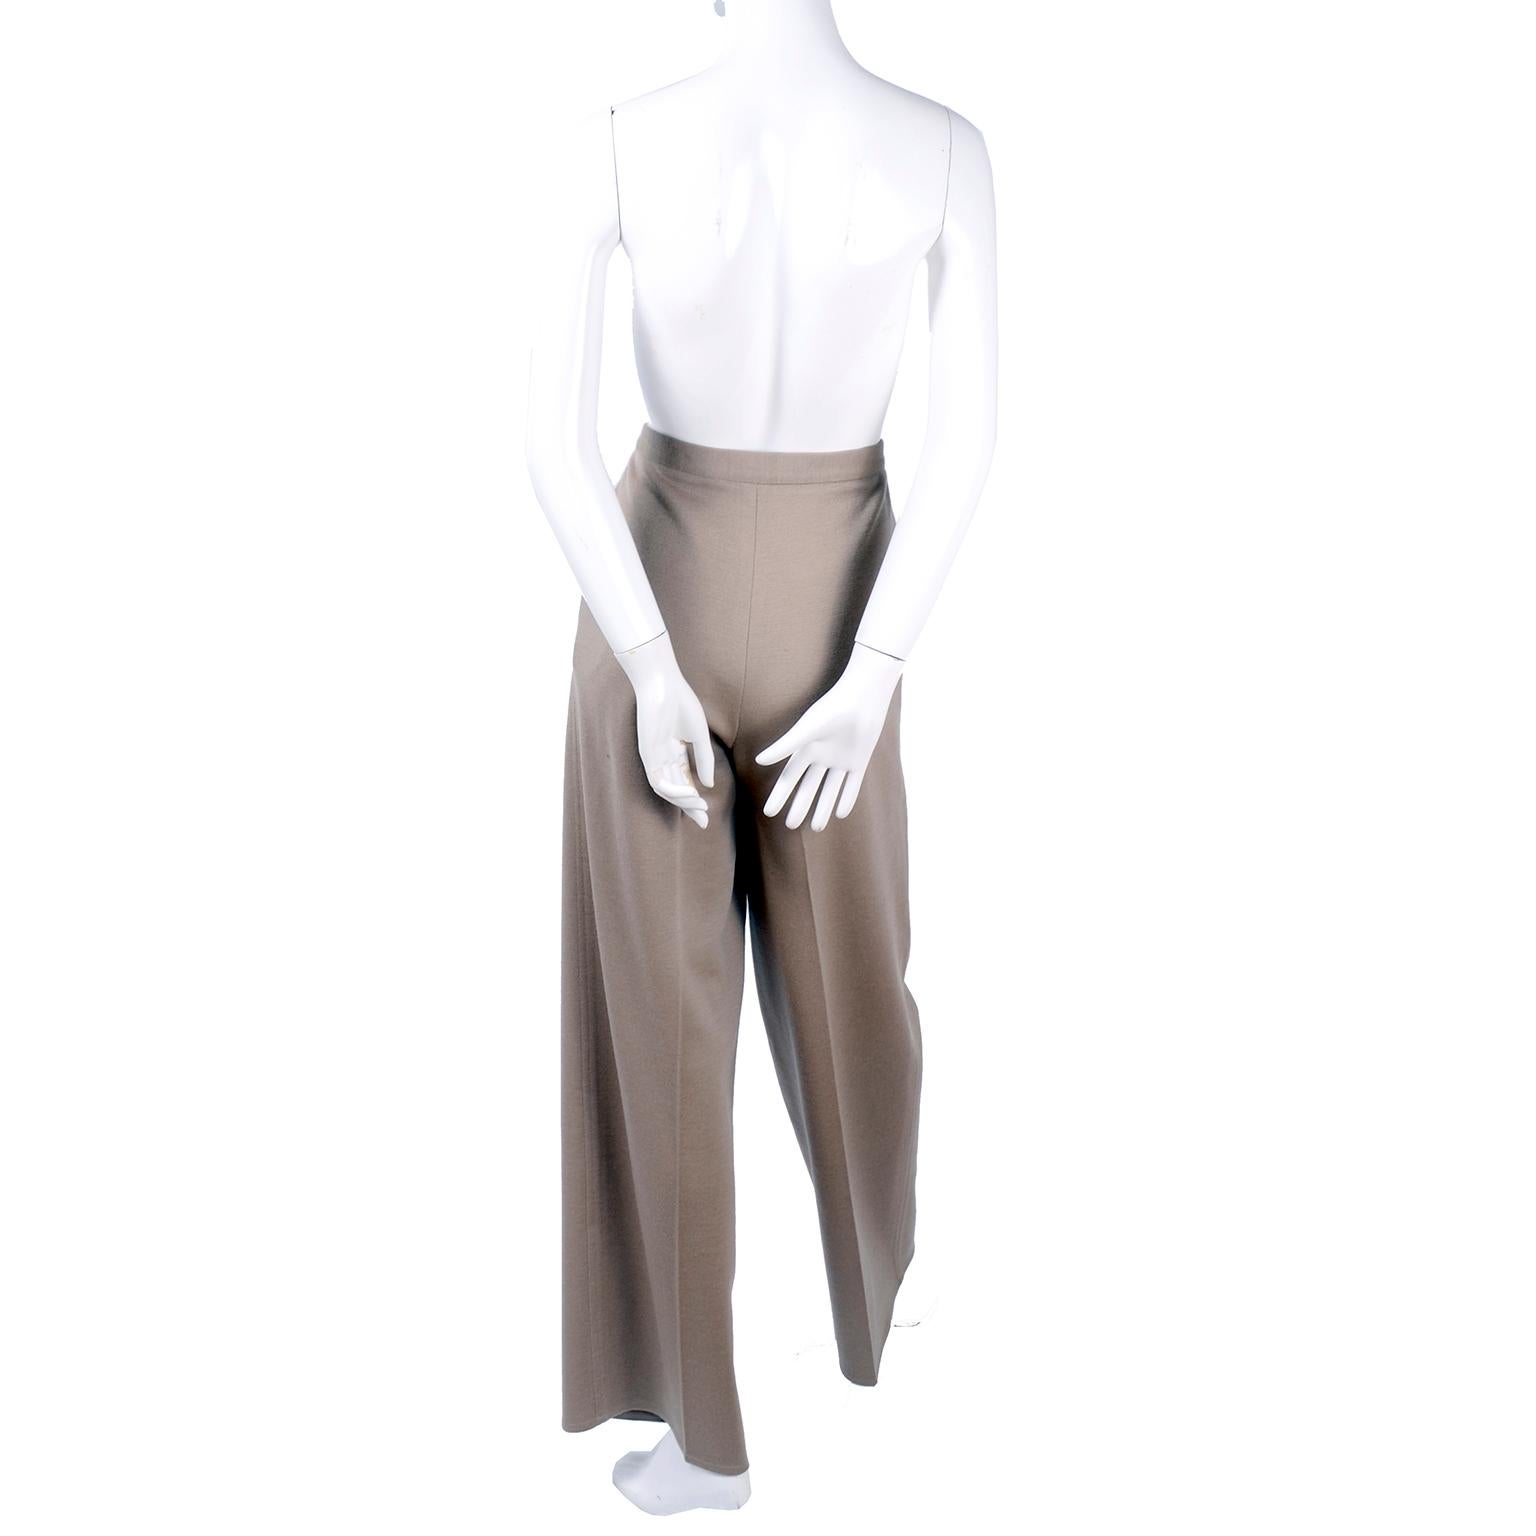 Sonia Rykiel Paris Vintage Beige Wool Trousers Coat and Scarf Pants Suit  For Sale 3